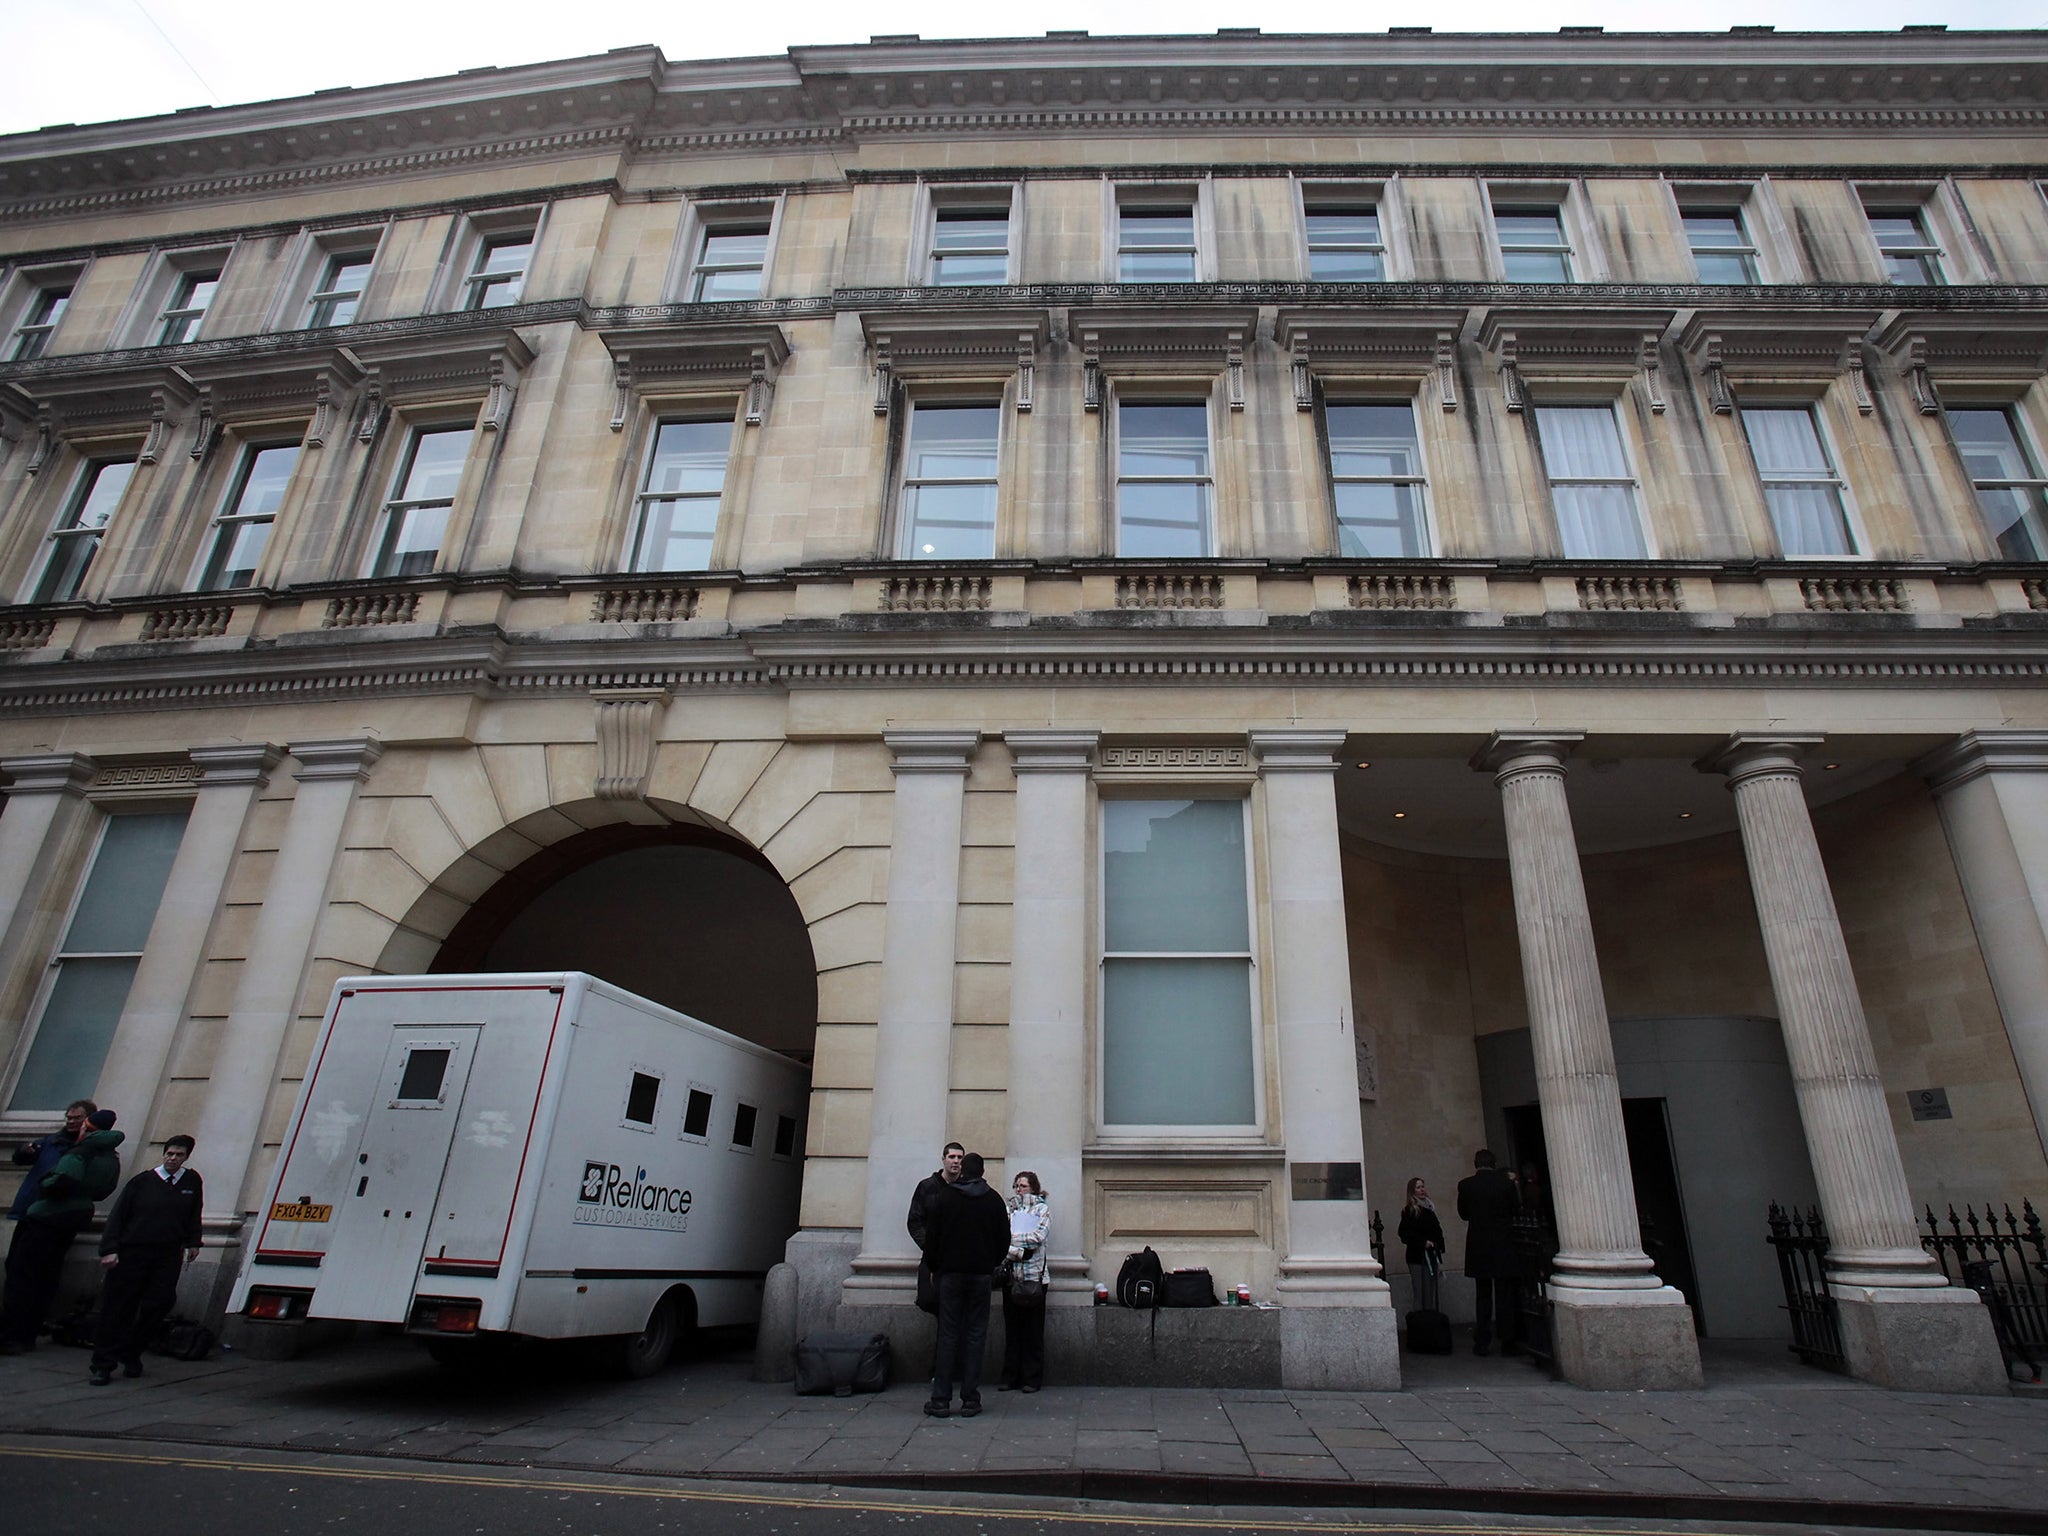 The murder trial is being heard at Bristol Crown Court